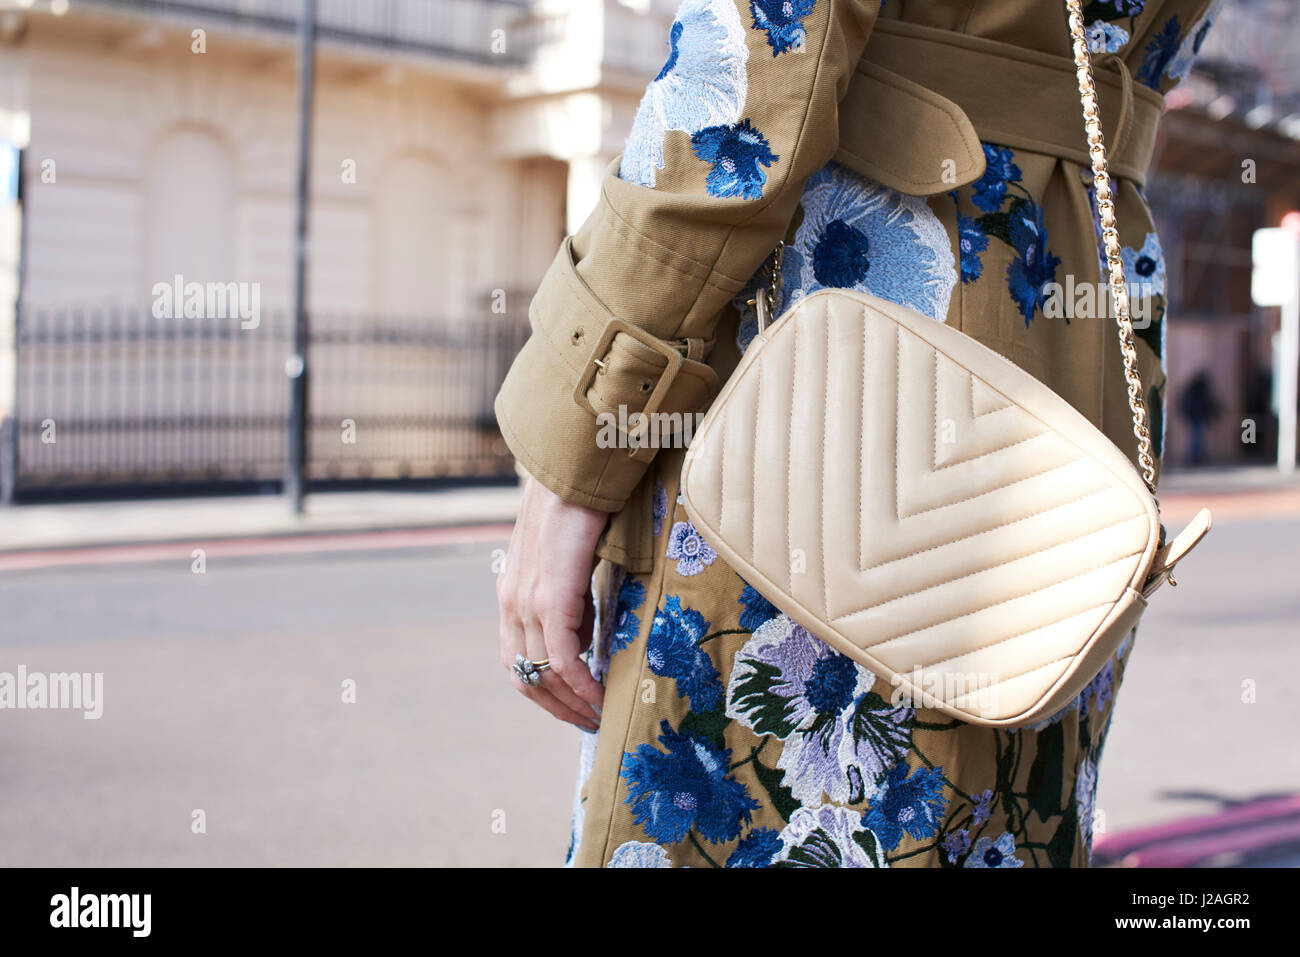 Londres - Février 2017 : Mid section of woman wearing white cross body sac à main Chanel et l'enduire de la décoration florale en rue pendant la Semaine de la mode de Londres Banque D'Images